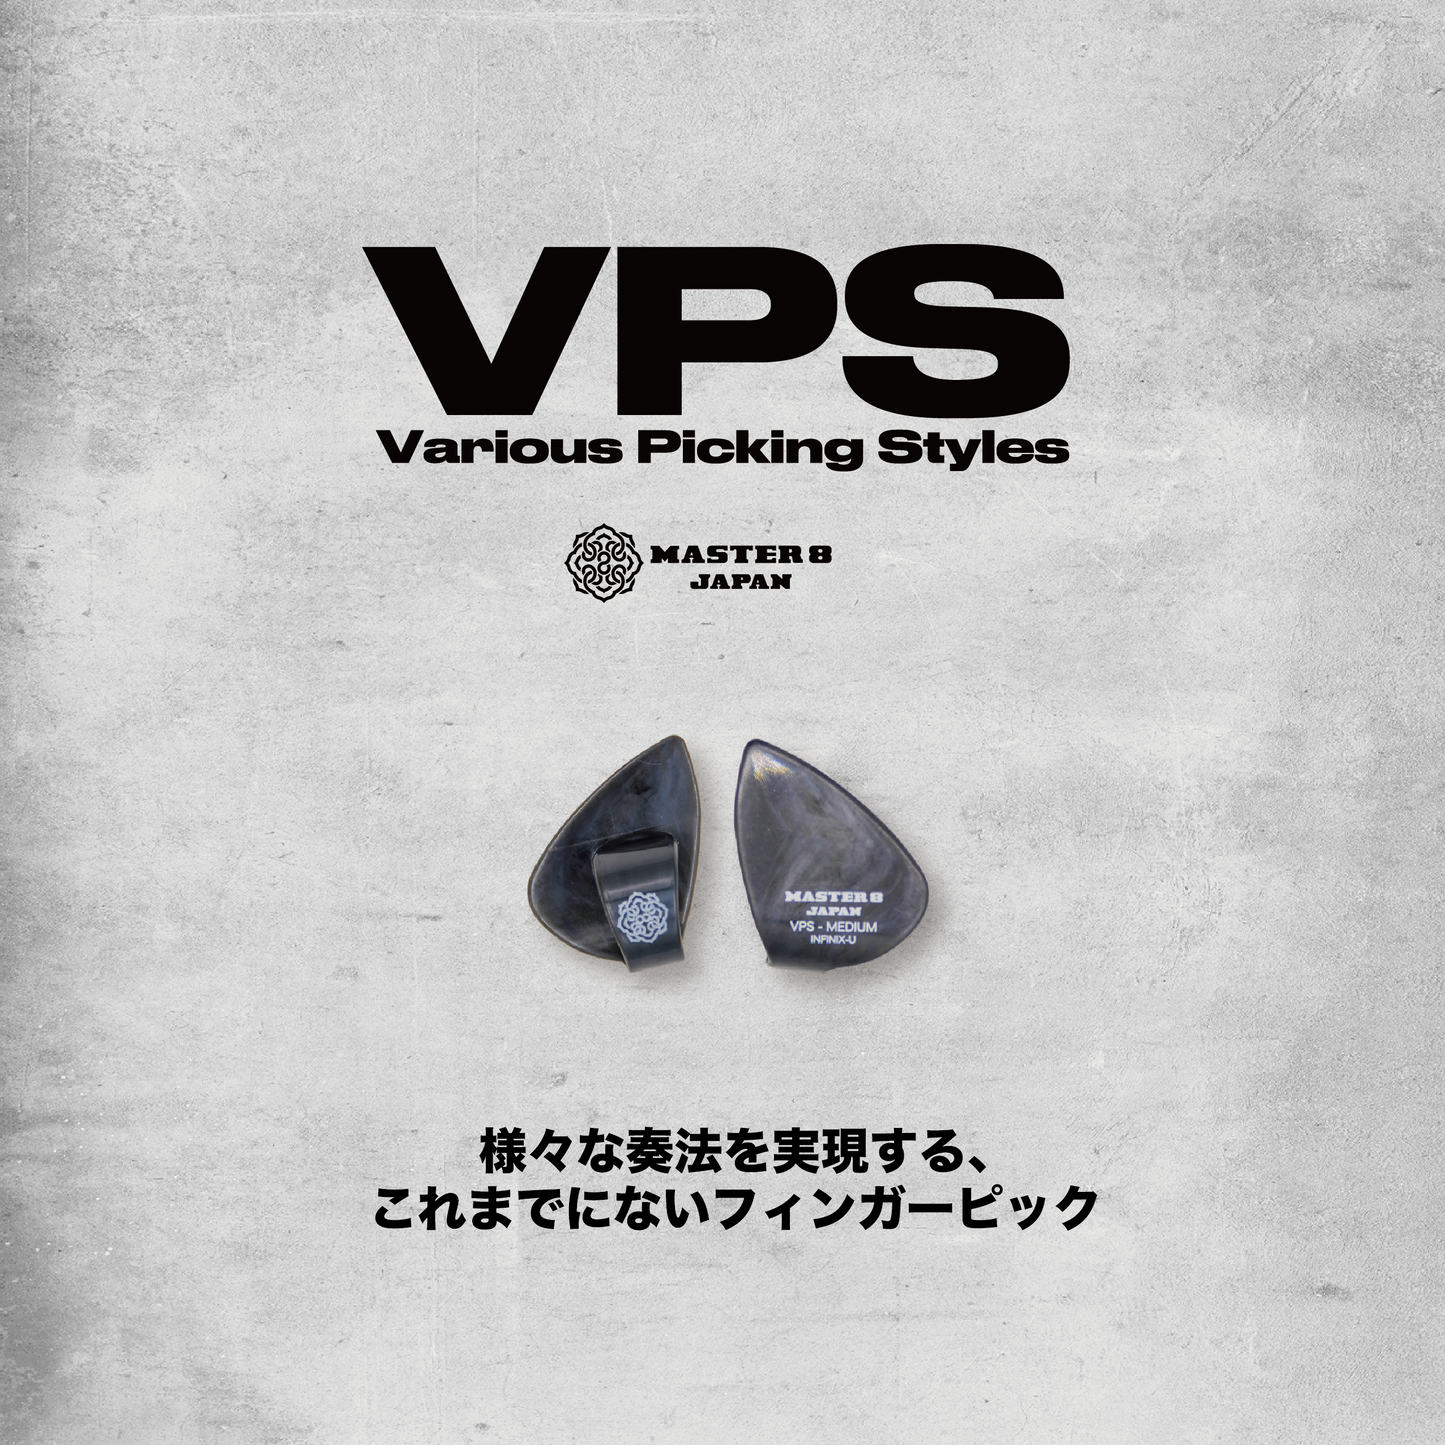 MASTER 8 JAPAN | VPS PICK - Finger Pick